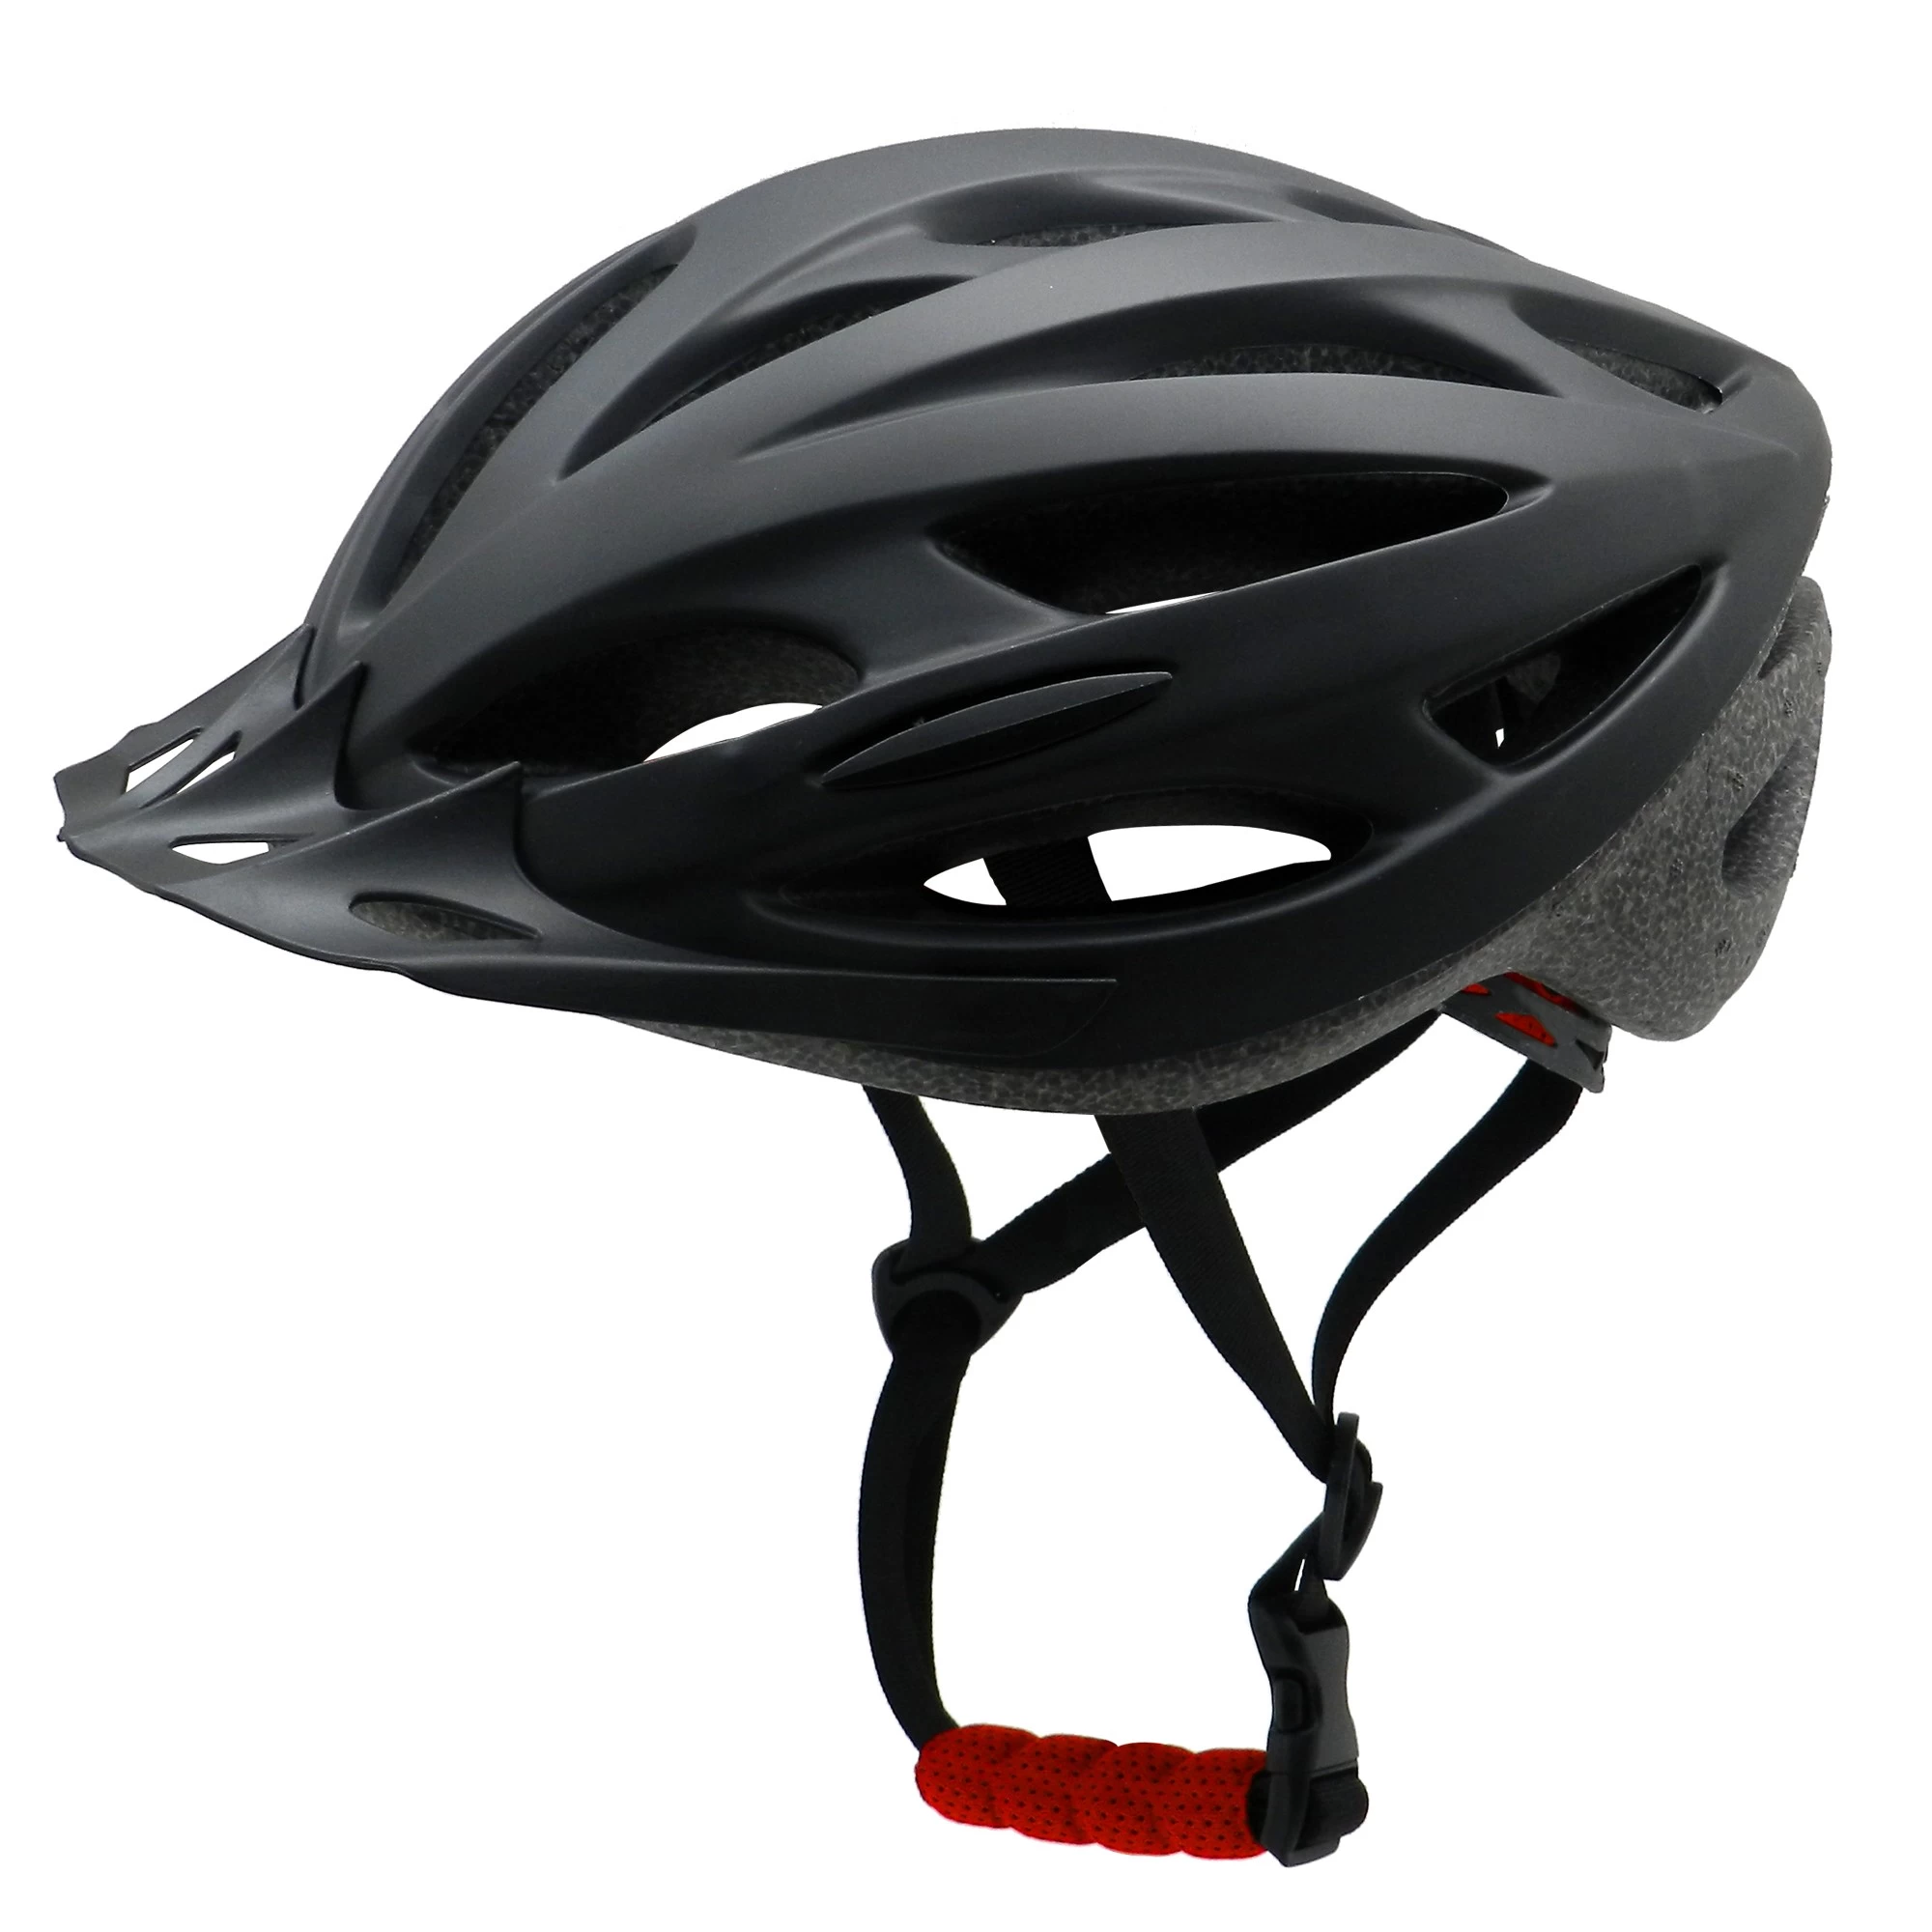 Шлем для велосипеда взрослый. Giro Prolight первый шлем. Kask Star Lady шлем. Велошлем Hudora Helmet 56-60. Occano велошлем.